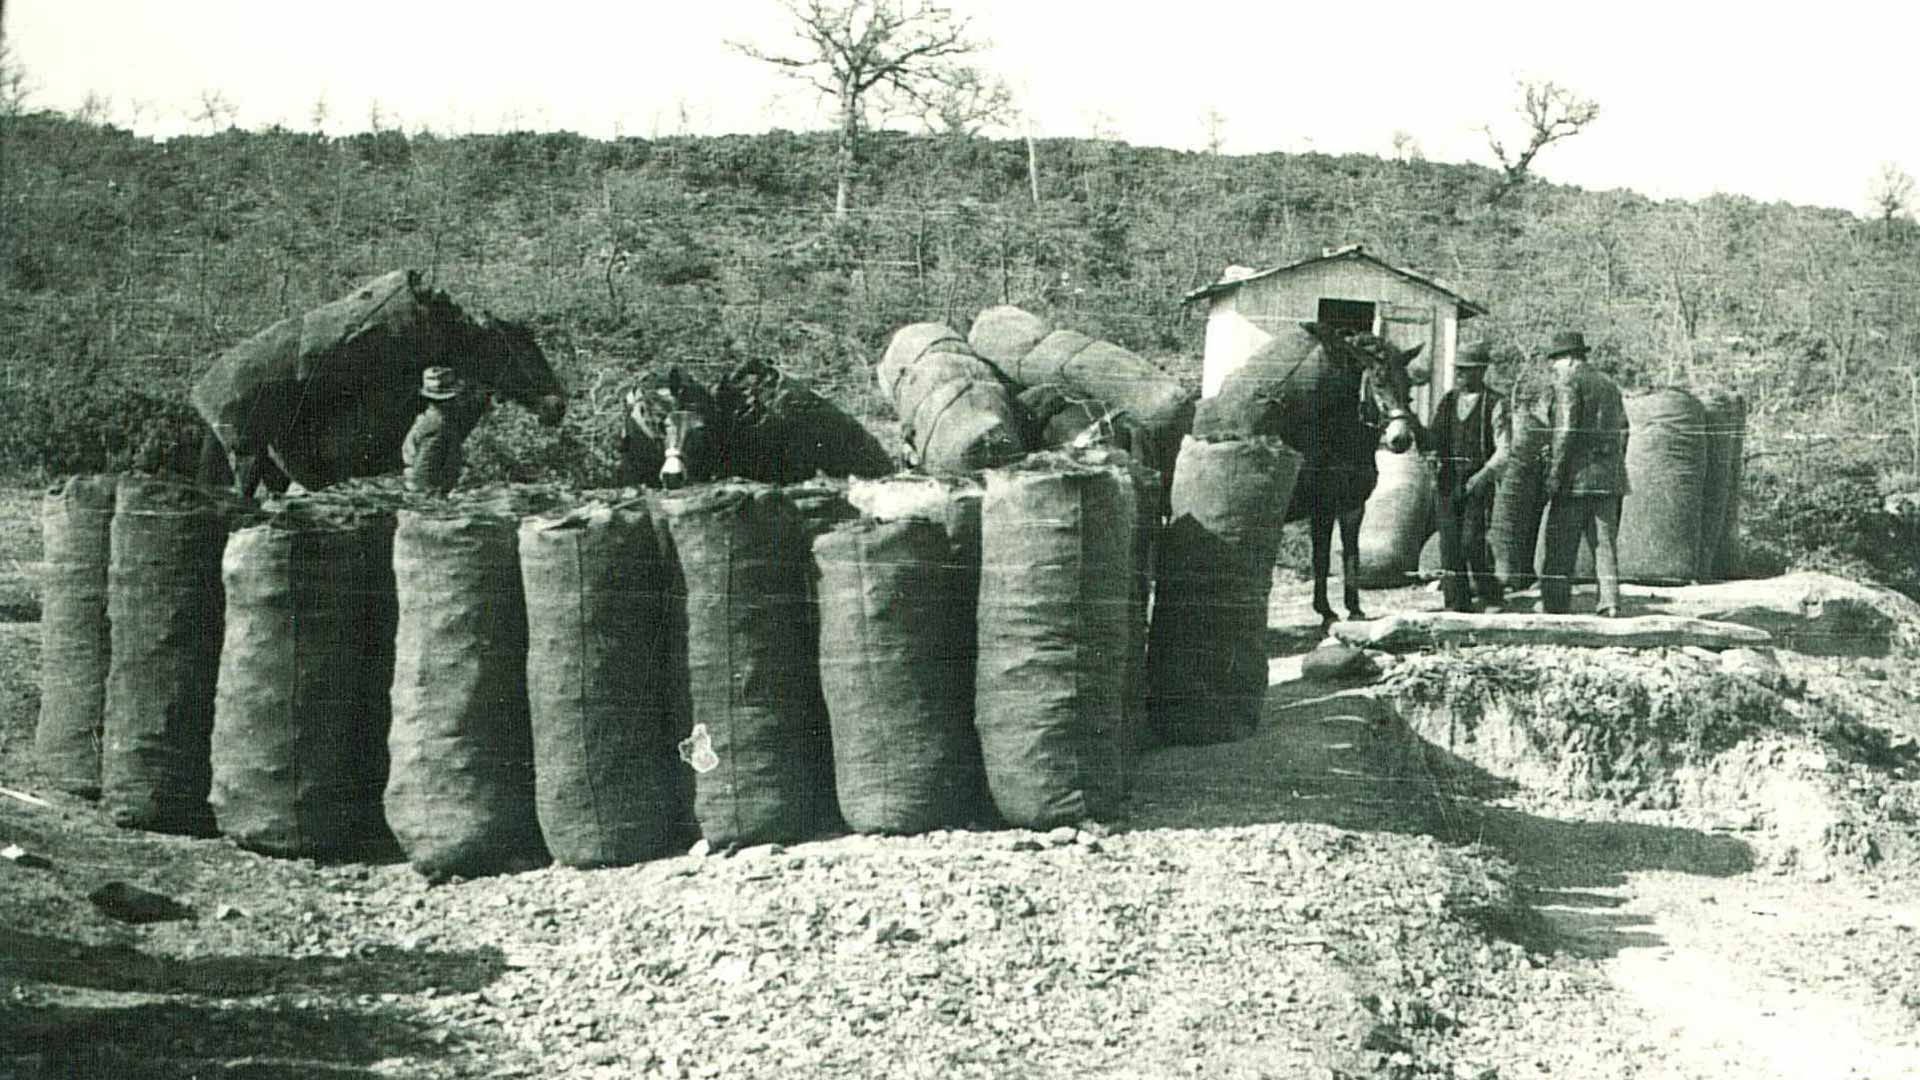 La récolte du charbon. Archives photographiques Margaritelli.